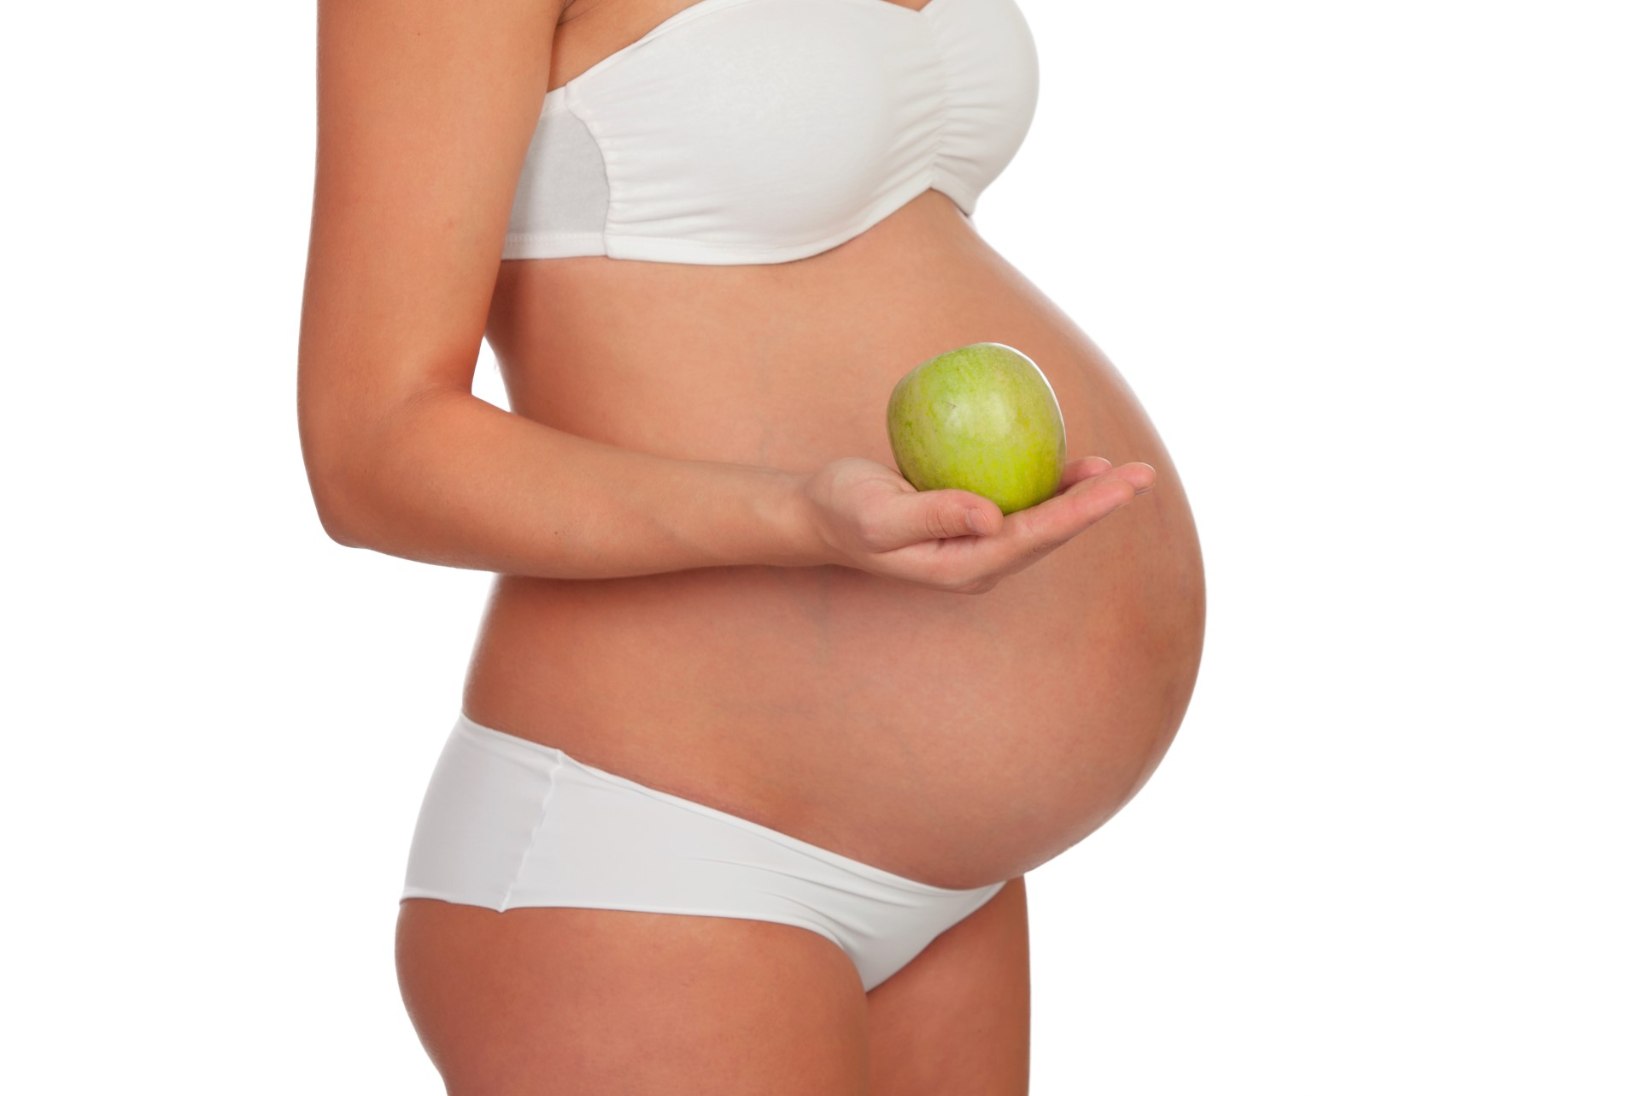 Millised marjad ja puuviljad sobivad rasedatele ja imetavatele emadele?